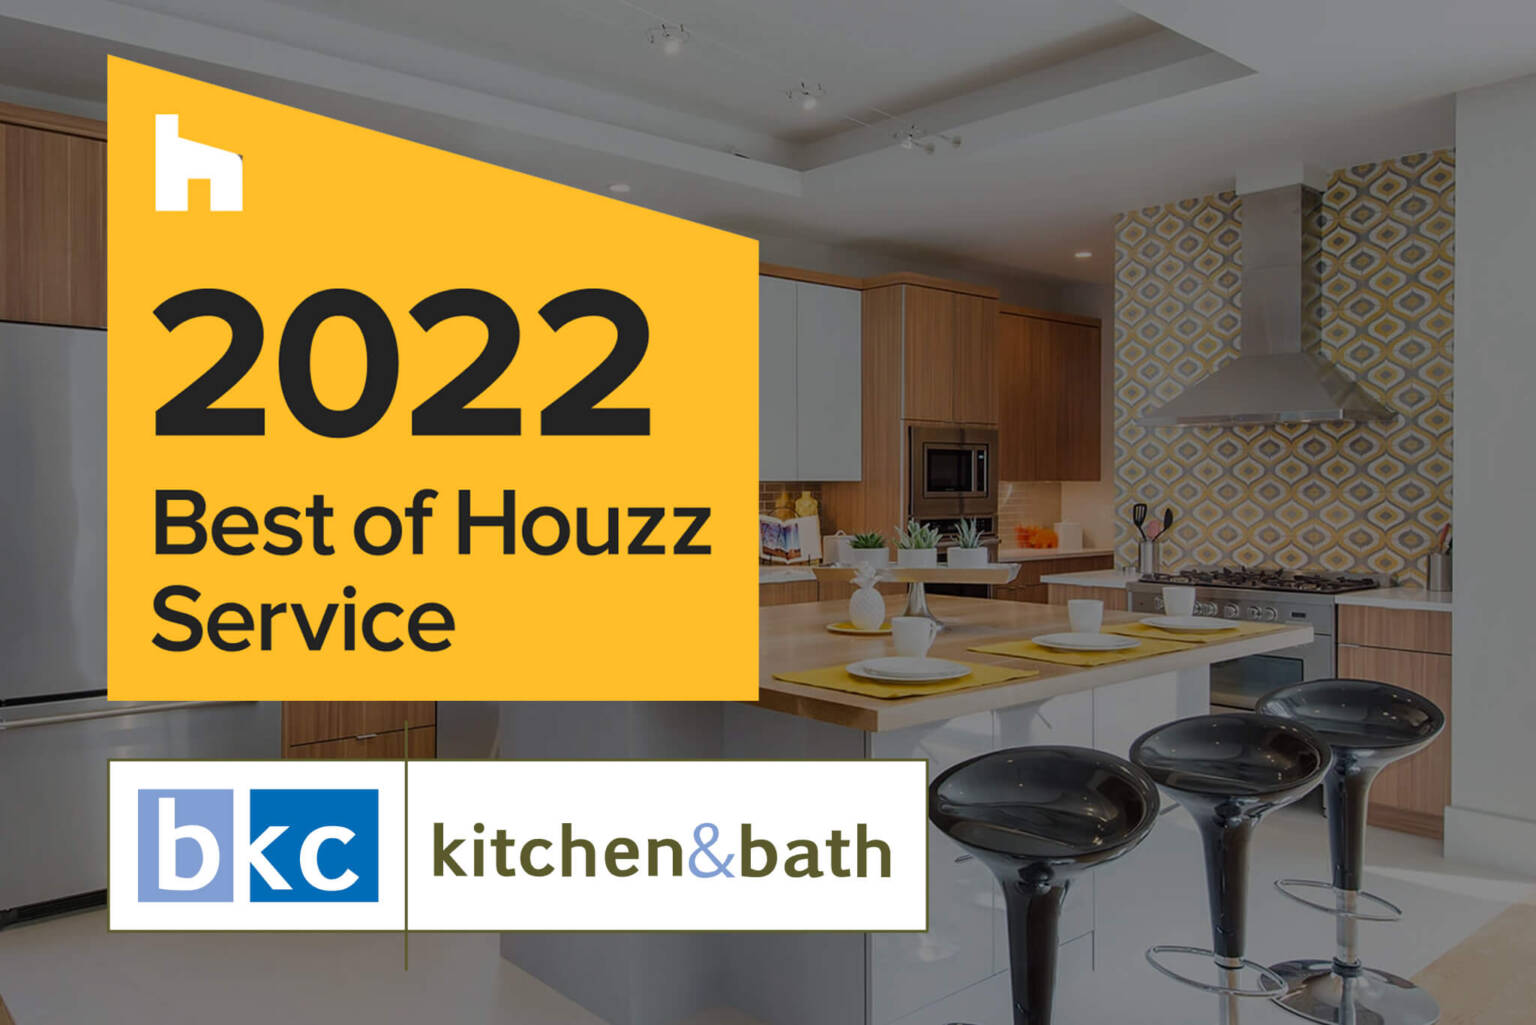 BKC 2022 Houzz Featured 1536x1025 